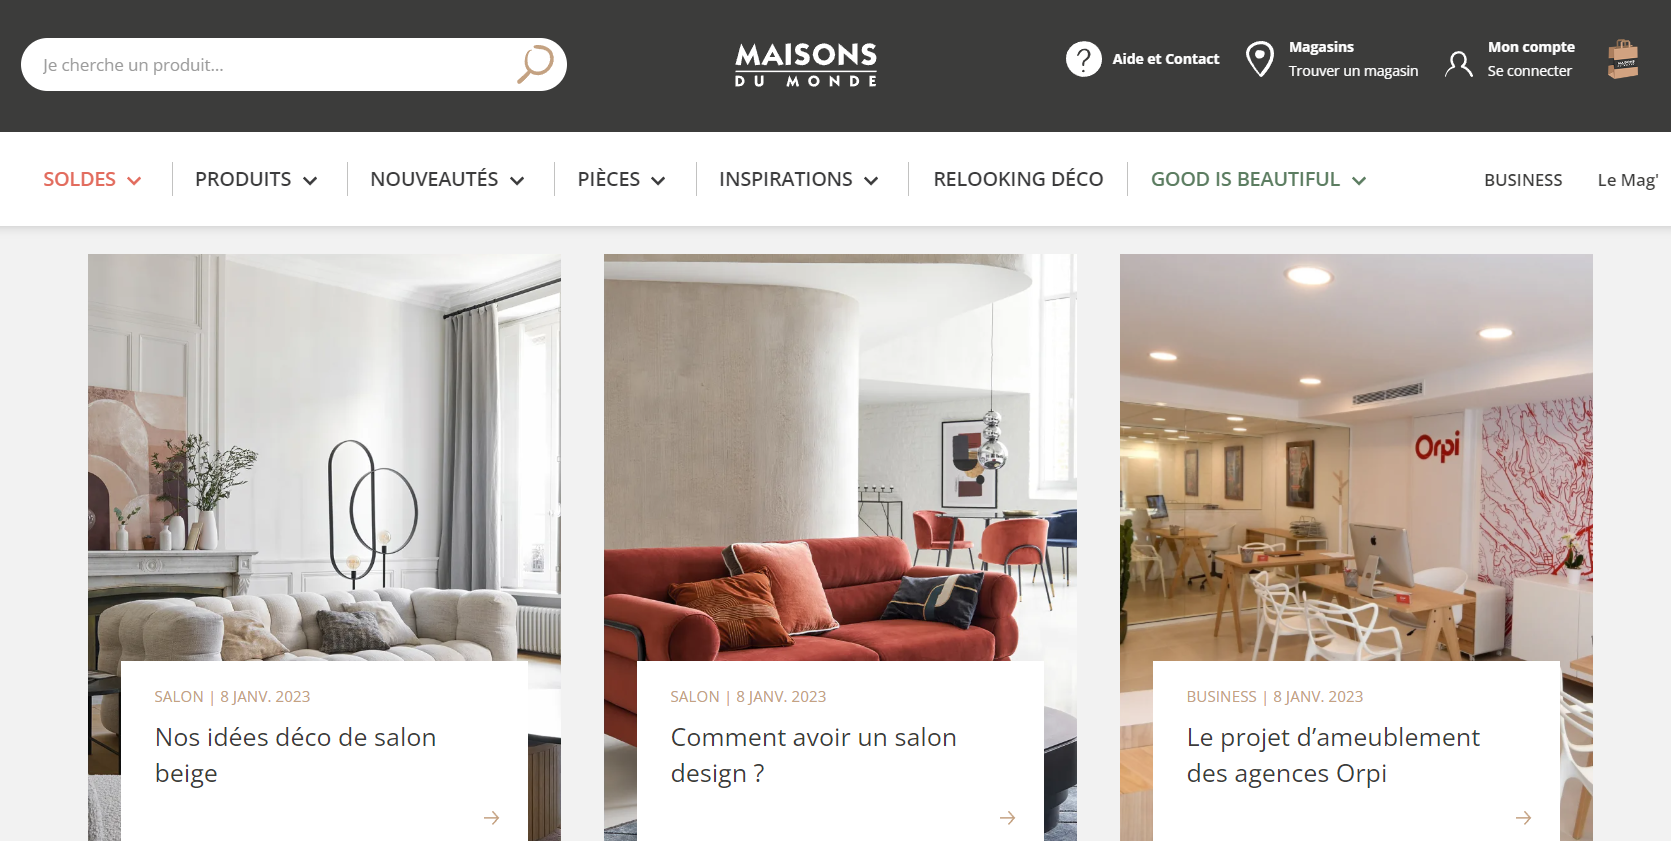 El blog de Maisons de Mundo es un ejemplo perfecto de la armonía que debe haber entre el blog, las imágenes y la identidad de marca